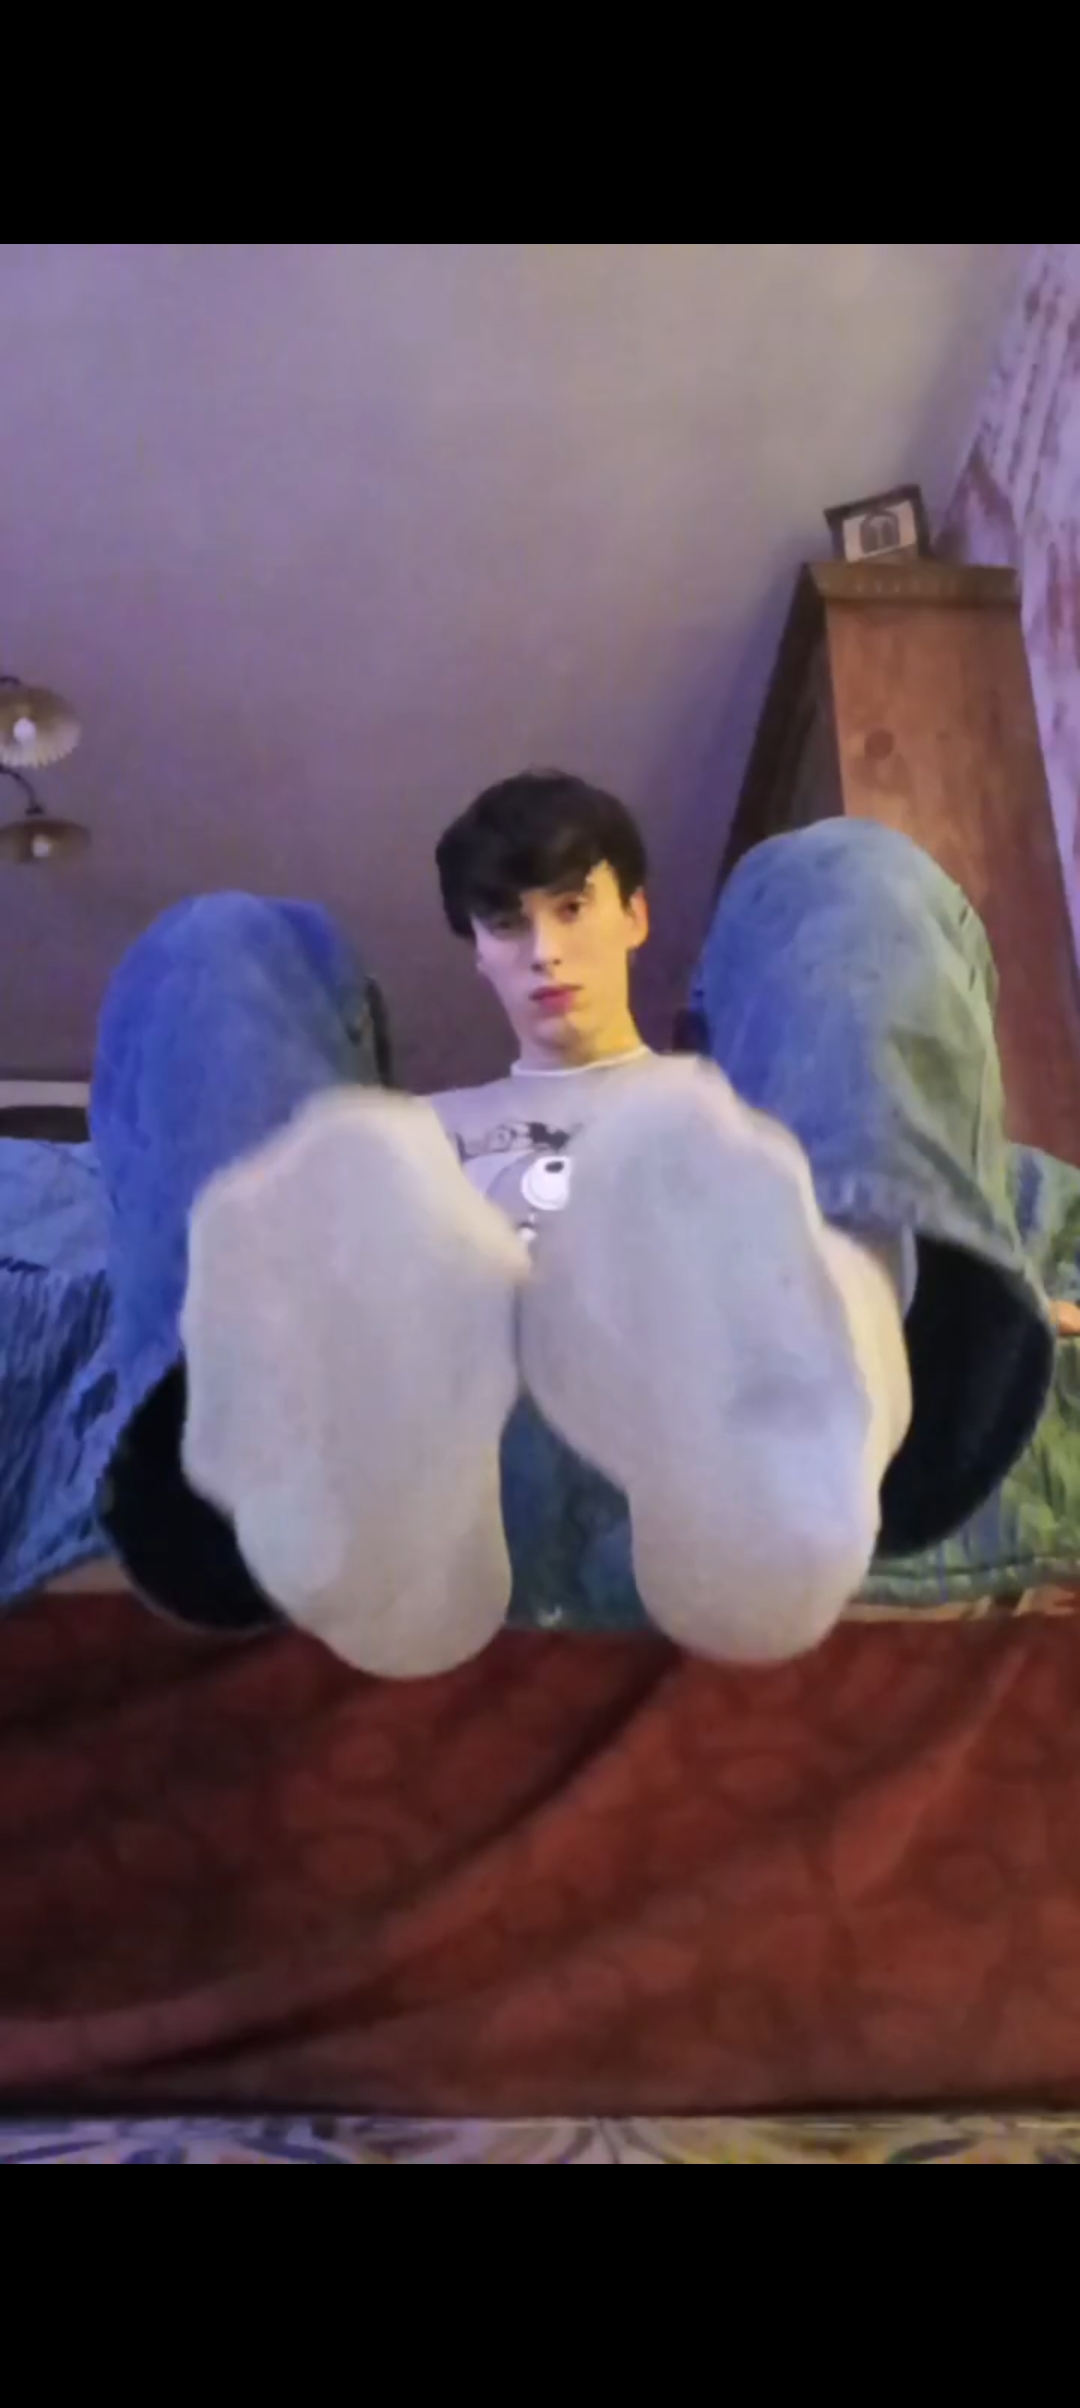 Cute guy licks his own feet